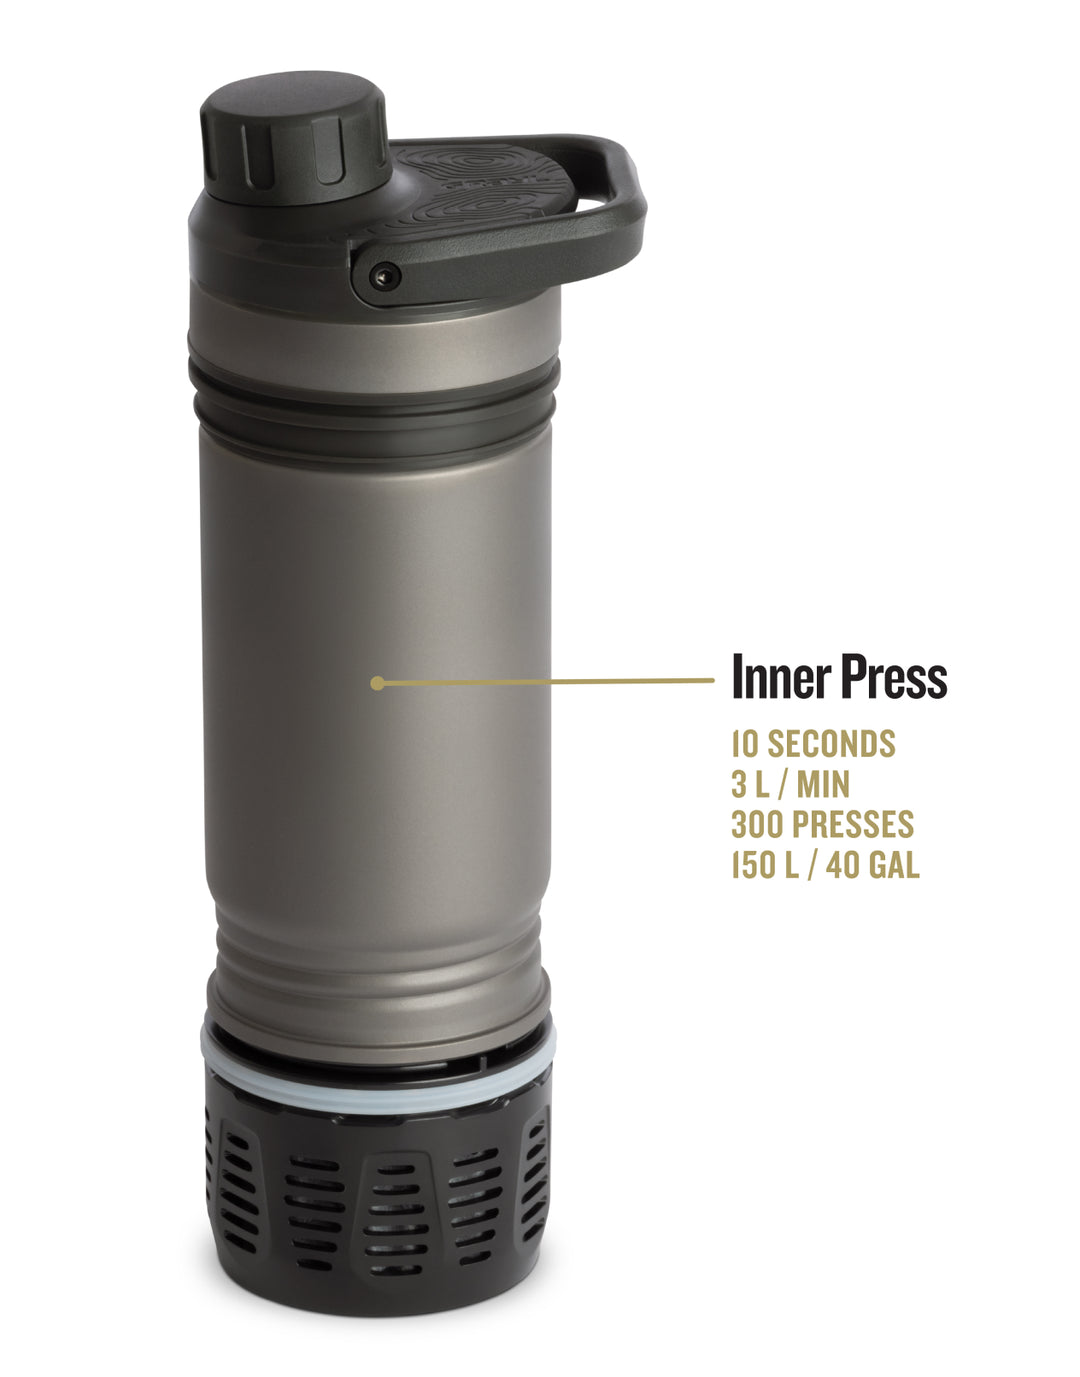 UltraPress Titanium Inner Press.